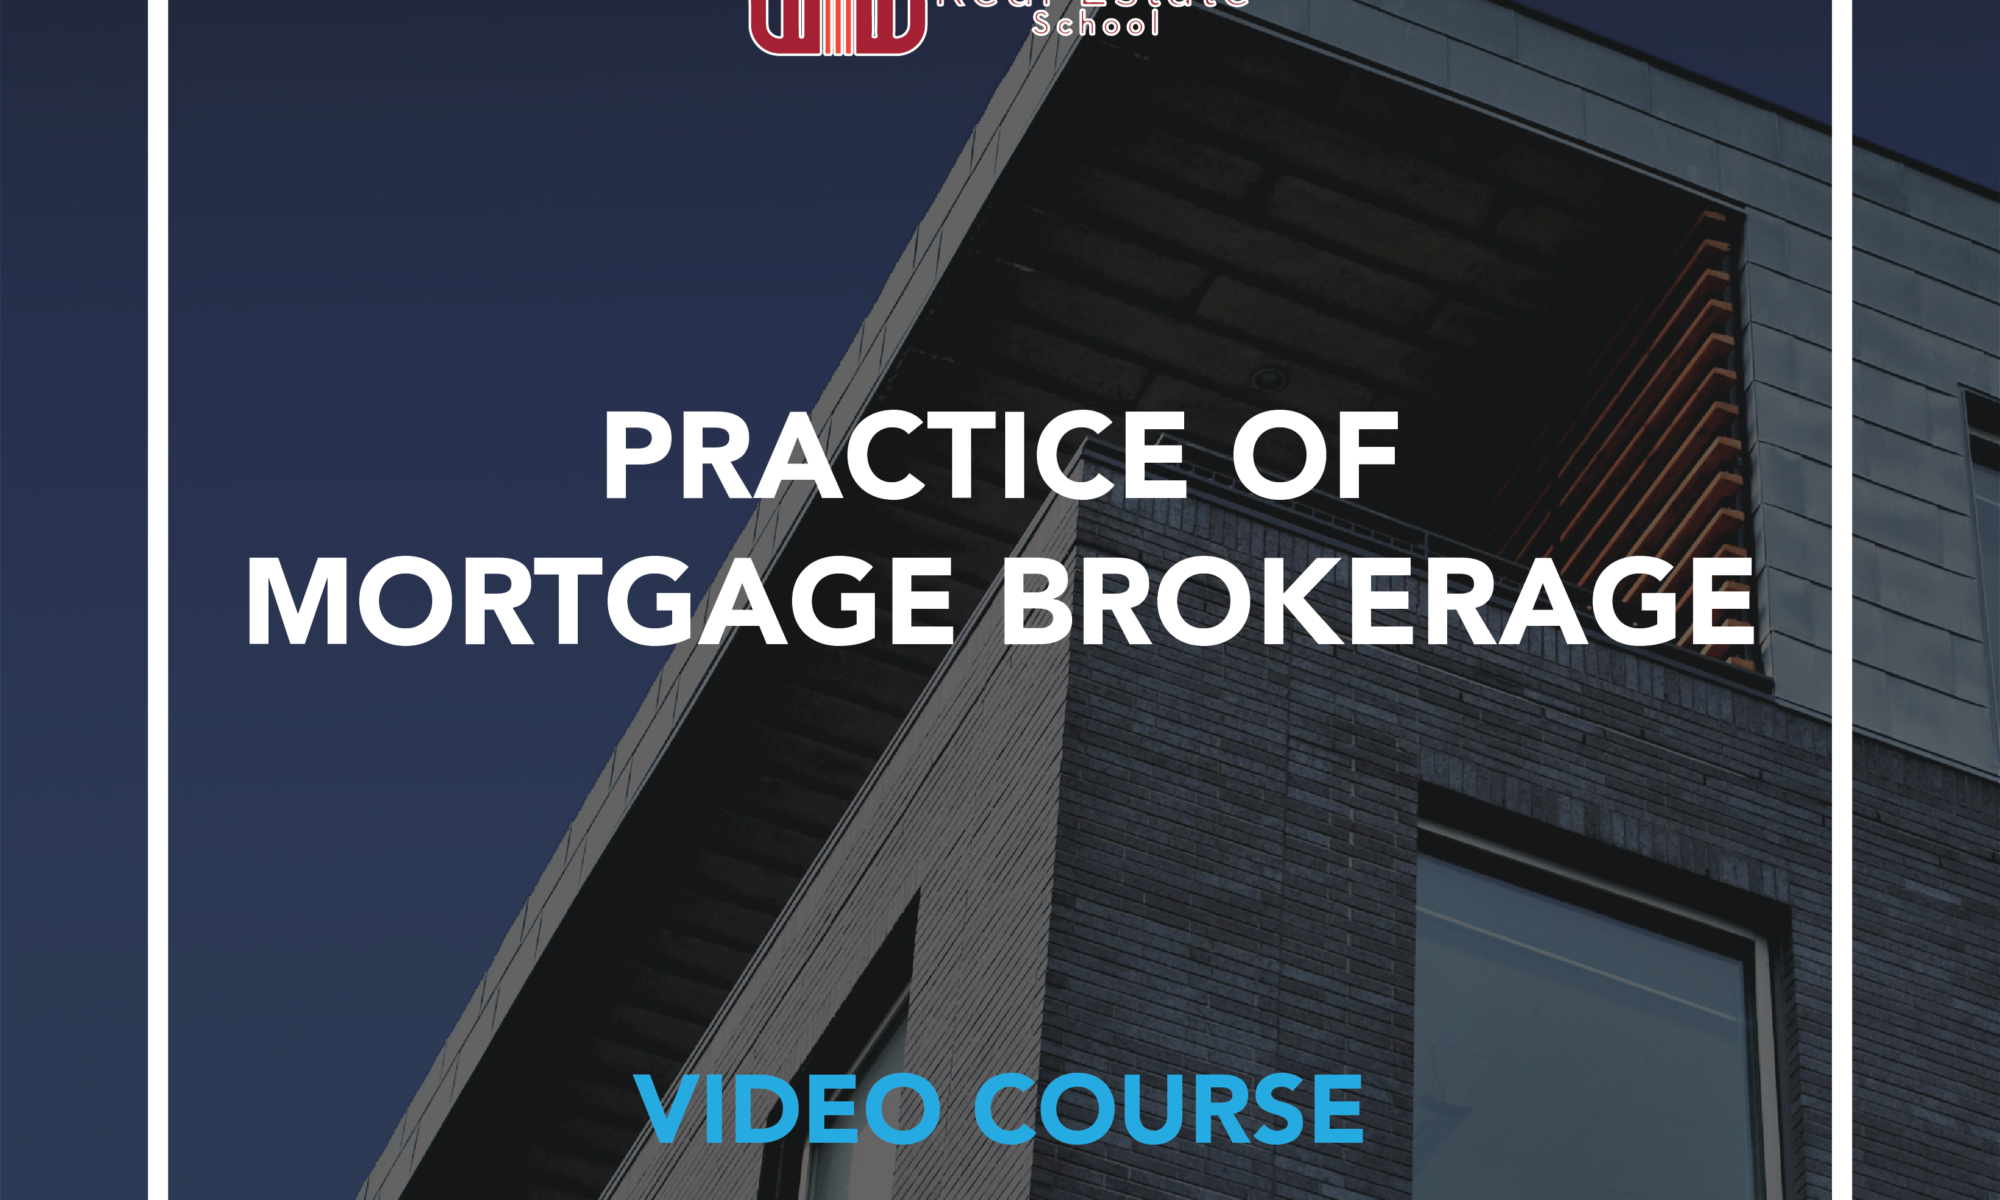 Practice of Mortgage Brokerage Course - Alberta Real Estate School